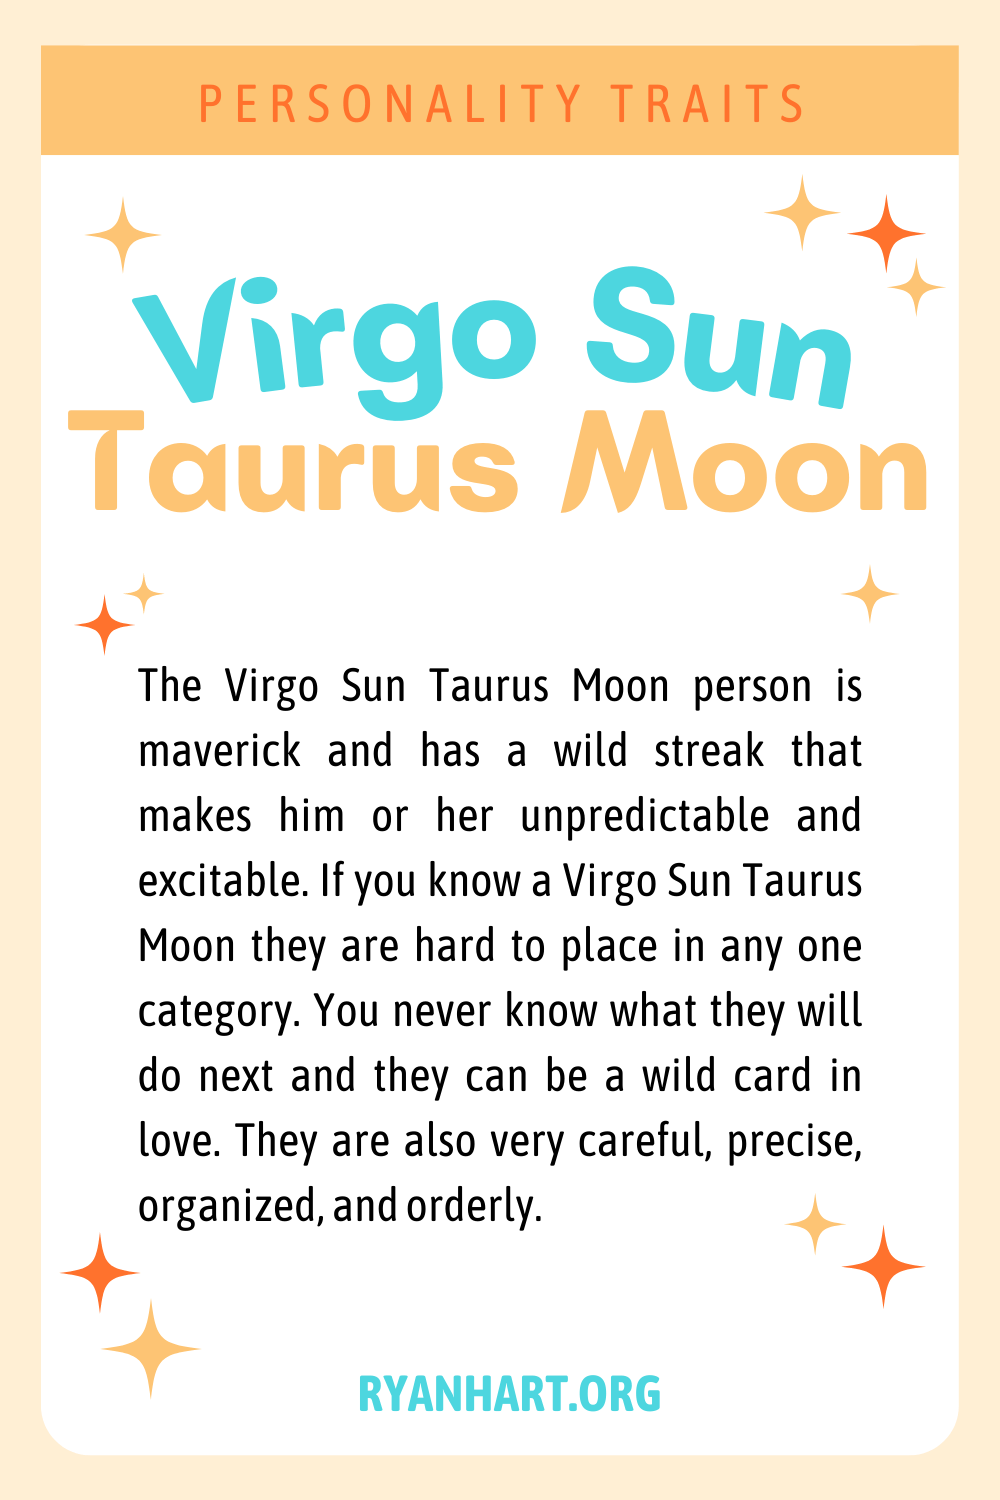 Virgo Sun Taurus Moon Description